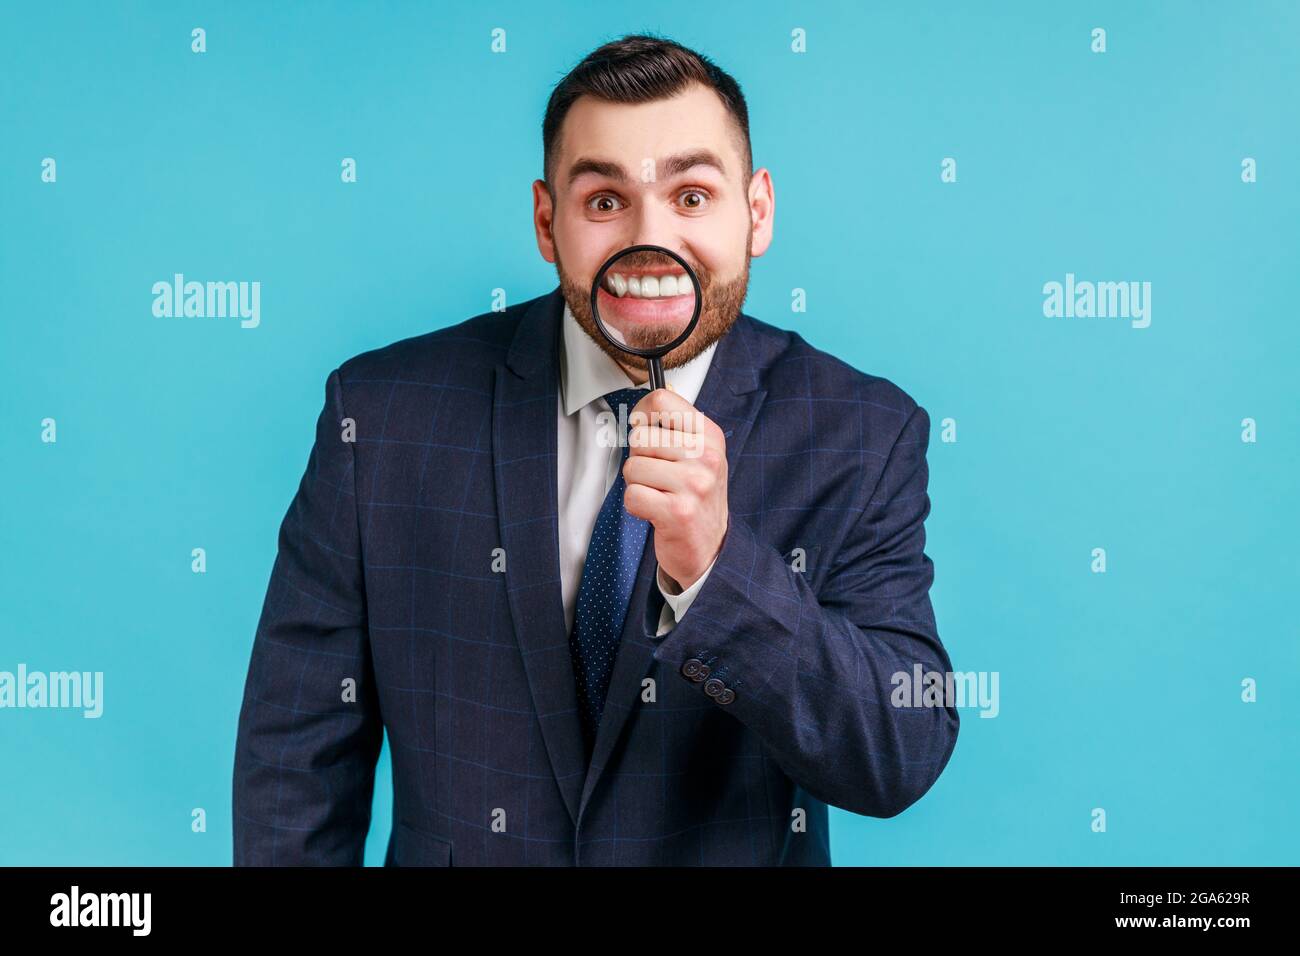 Lächeln-Zoom oder Zahnpflege-Konzept. Porträt eines jungen Geschäftsmannes im Anzug stehend, mit Lupe auf den Zähnen, mit einem toothy Lächeln. Zoll Stockfoto